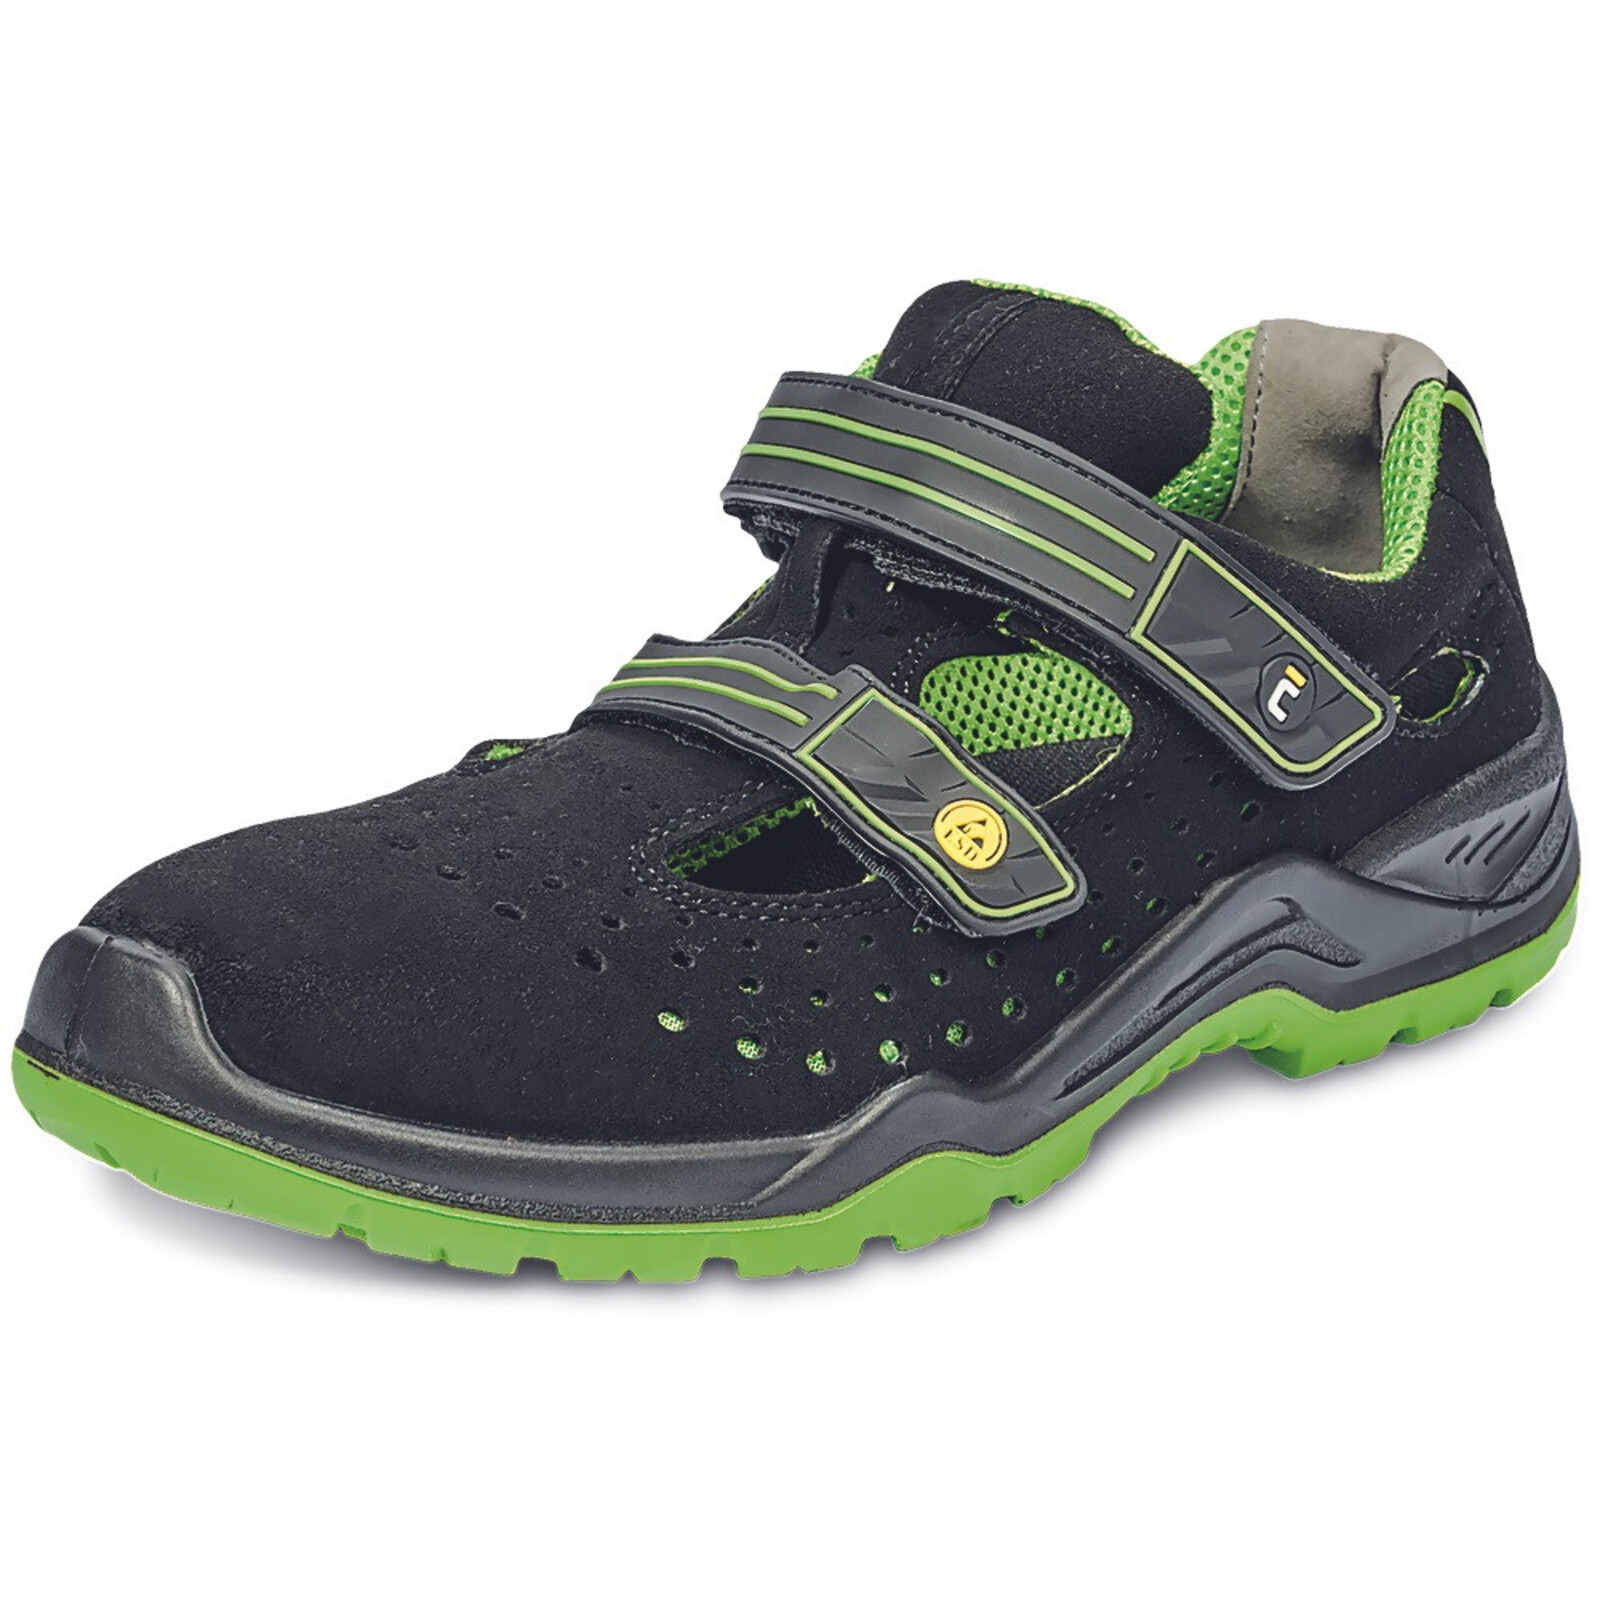 Bezpečnostné sandále Cerva Halwill MF ESD S1P SRC - veľkosť: 46, farba: čierna/zelená